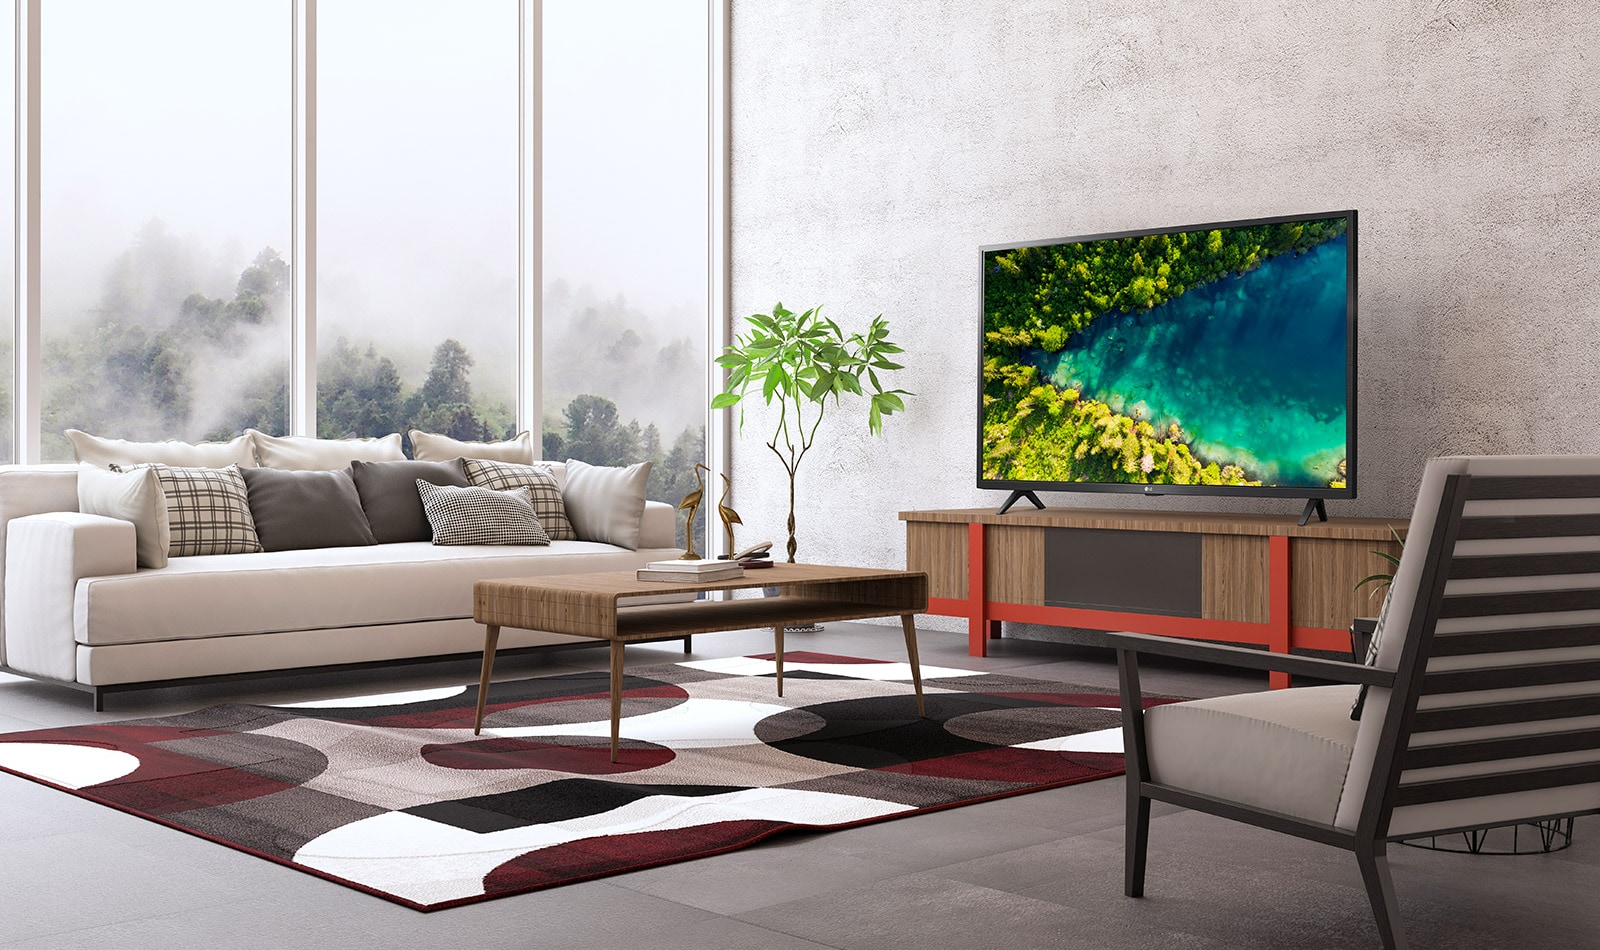 Smart TV - LG LG 32LM6370PLA Televisor Smart TV 32 Full HD HDR, Full-HD,  Procesador Quad Core de 10 bits., DVB-T2 (H.265), NEGRO